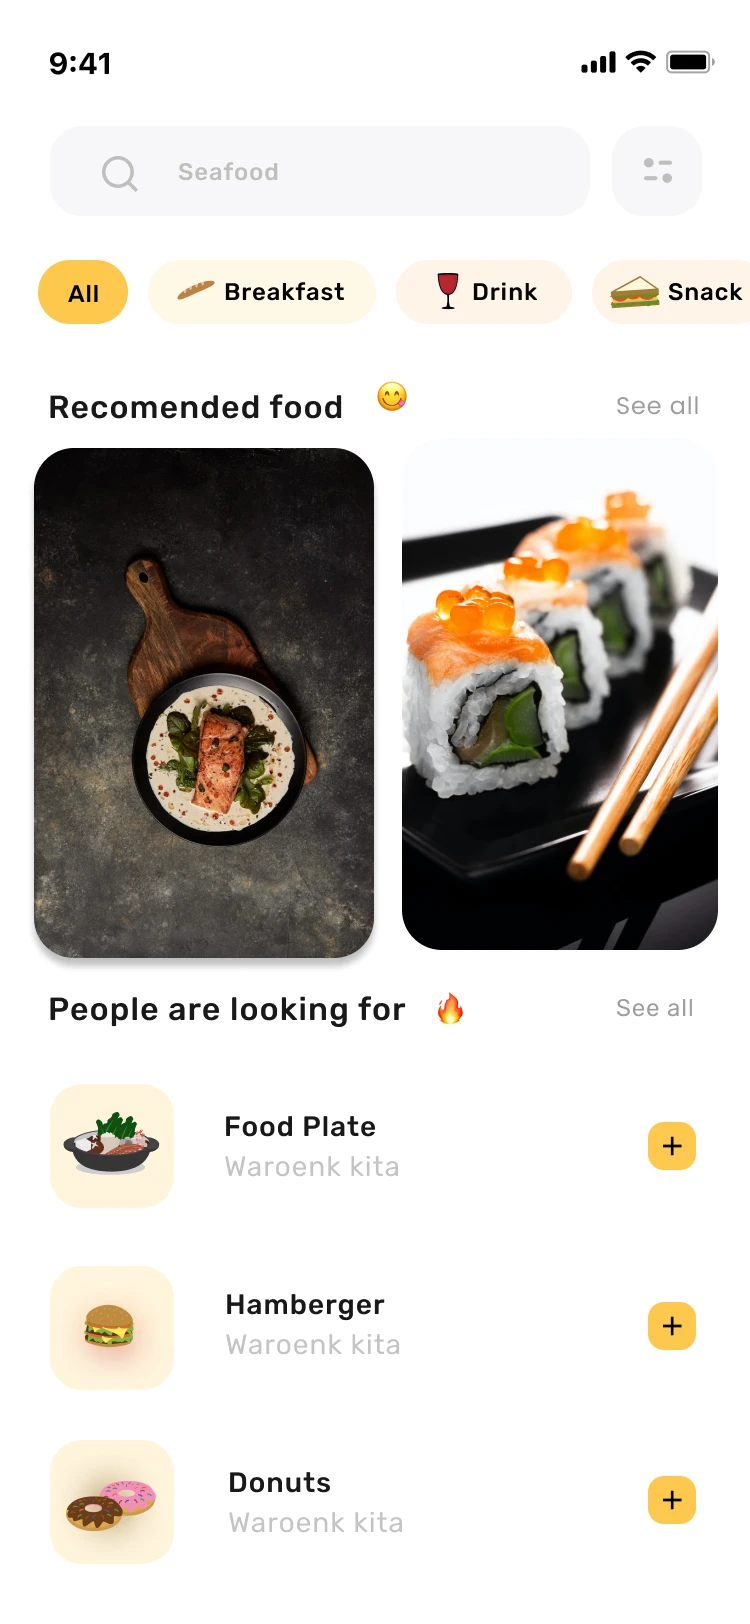 32屏美食外卖点餐配送应用UI设计套件 Chef Food Delivery app ui kit .figma插图13